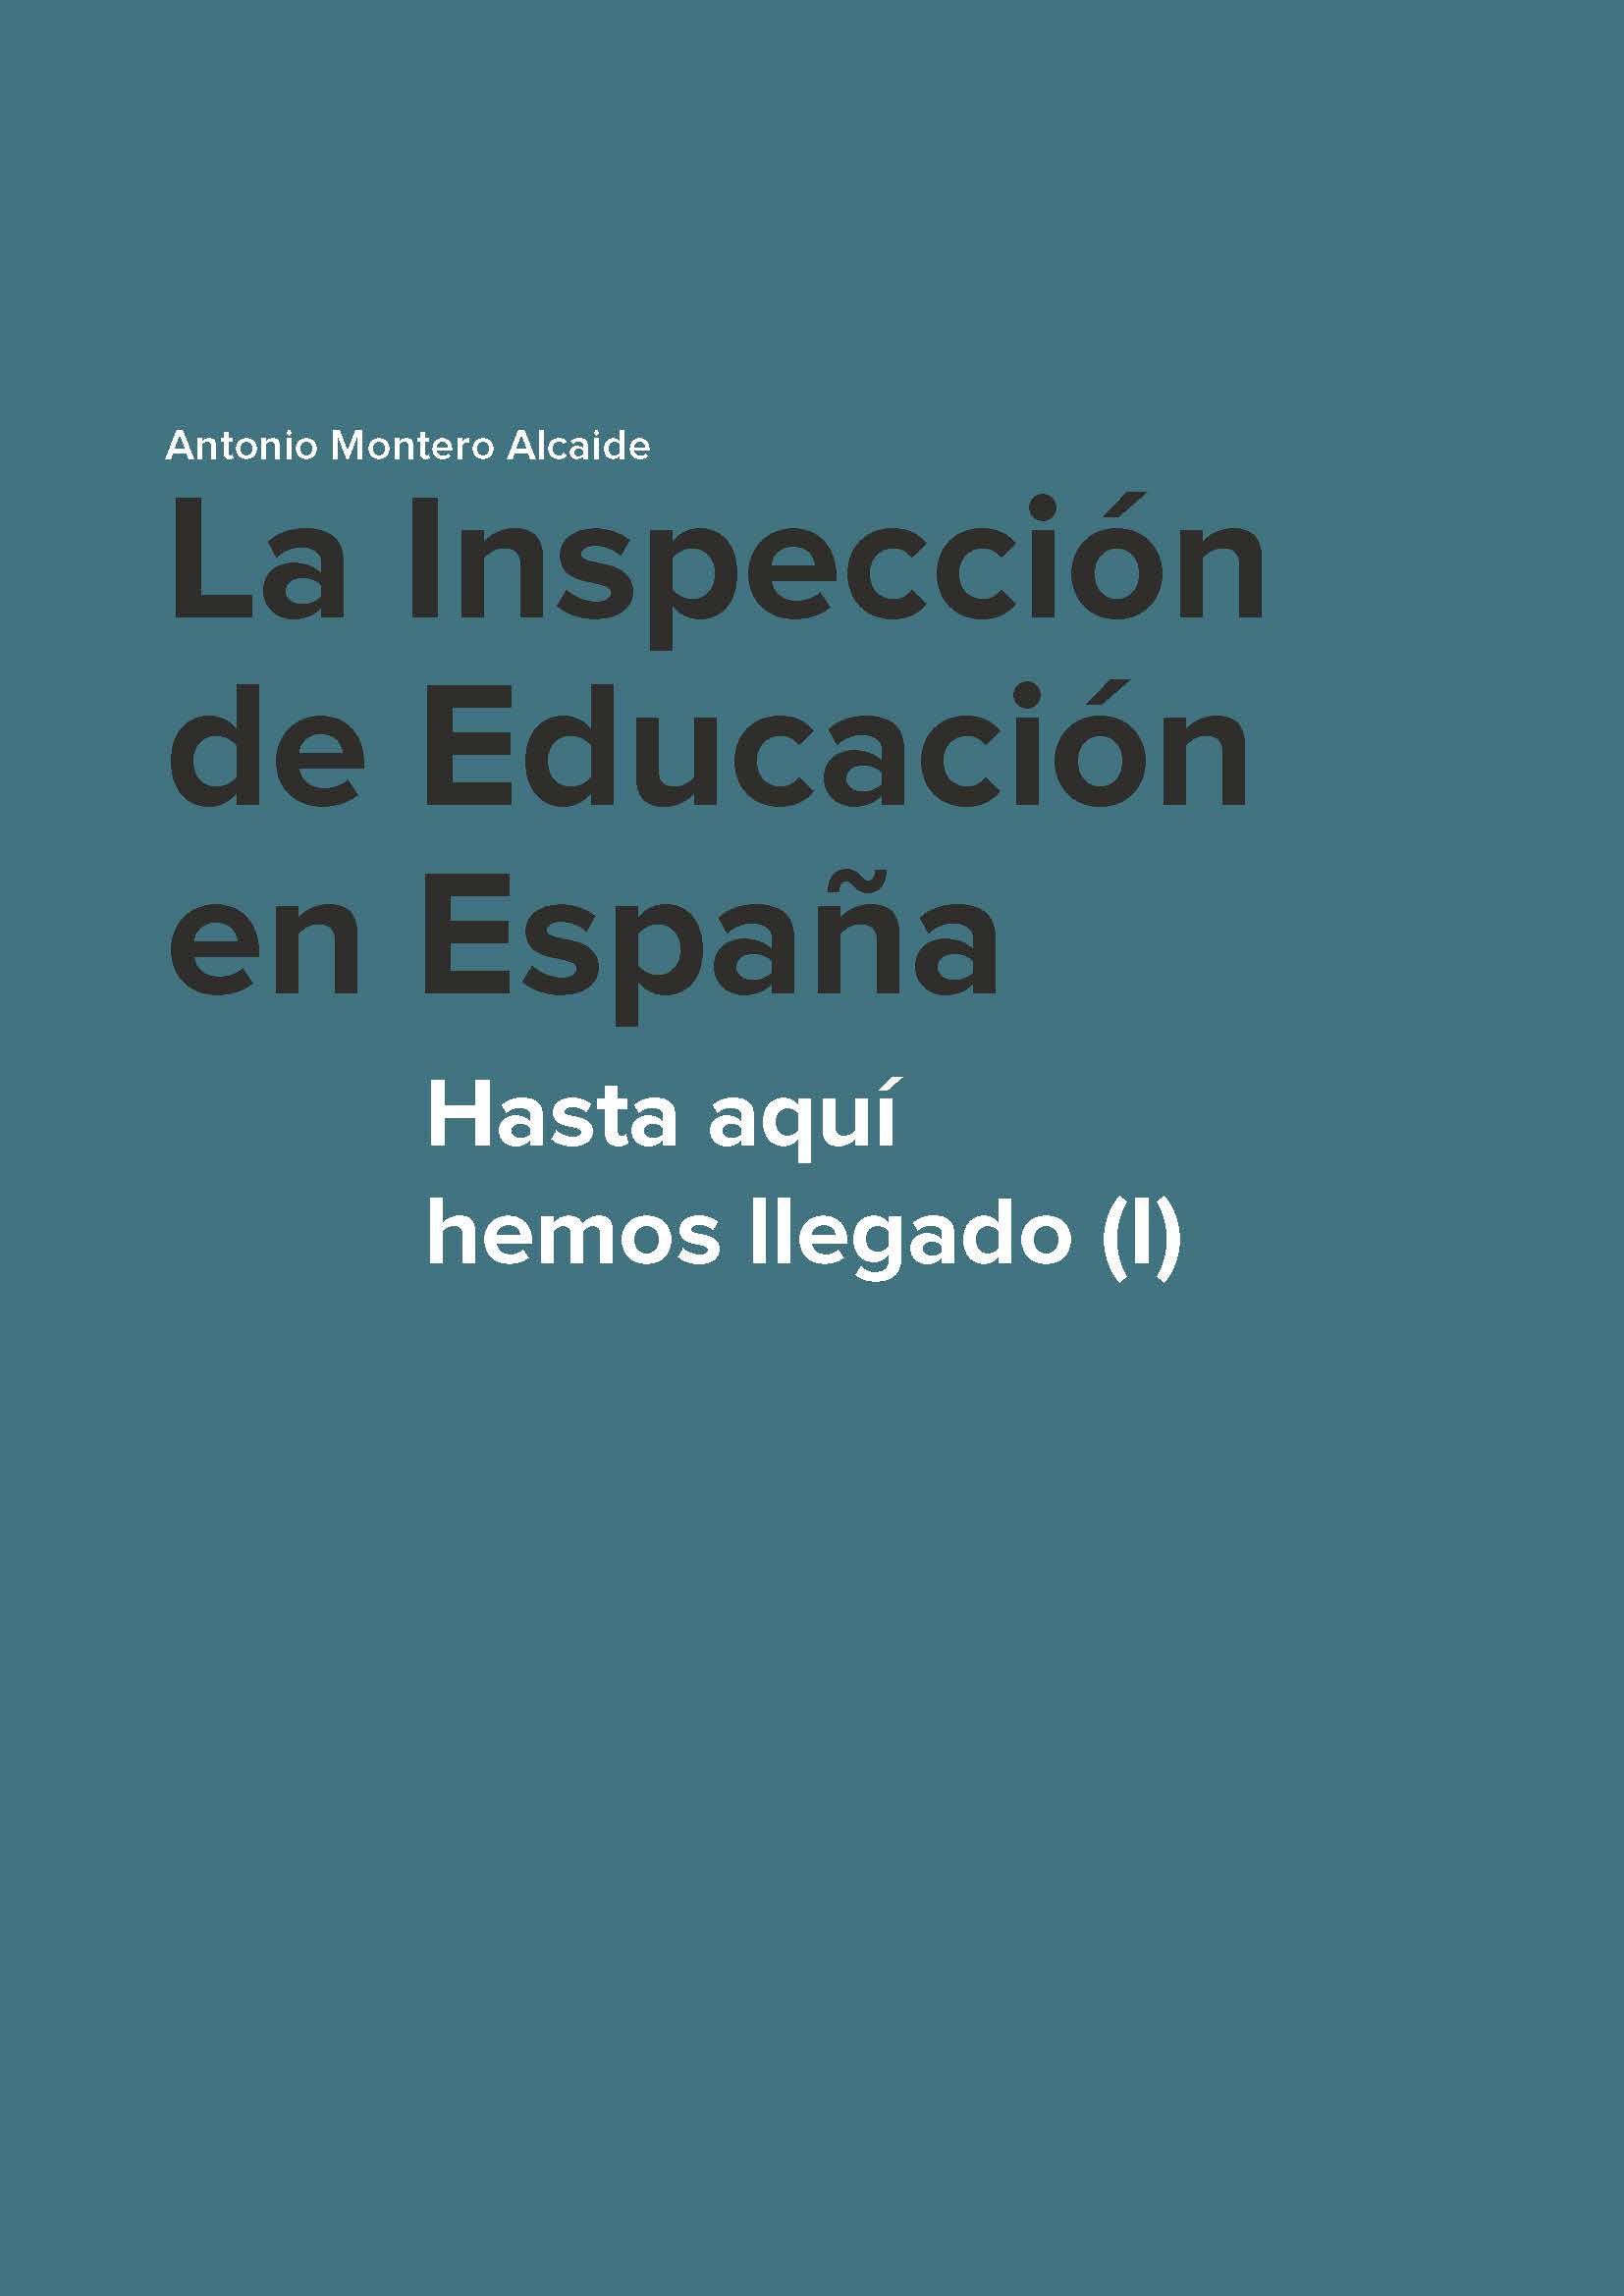 Imagen de portada del libro La Inspección de Educación en España